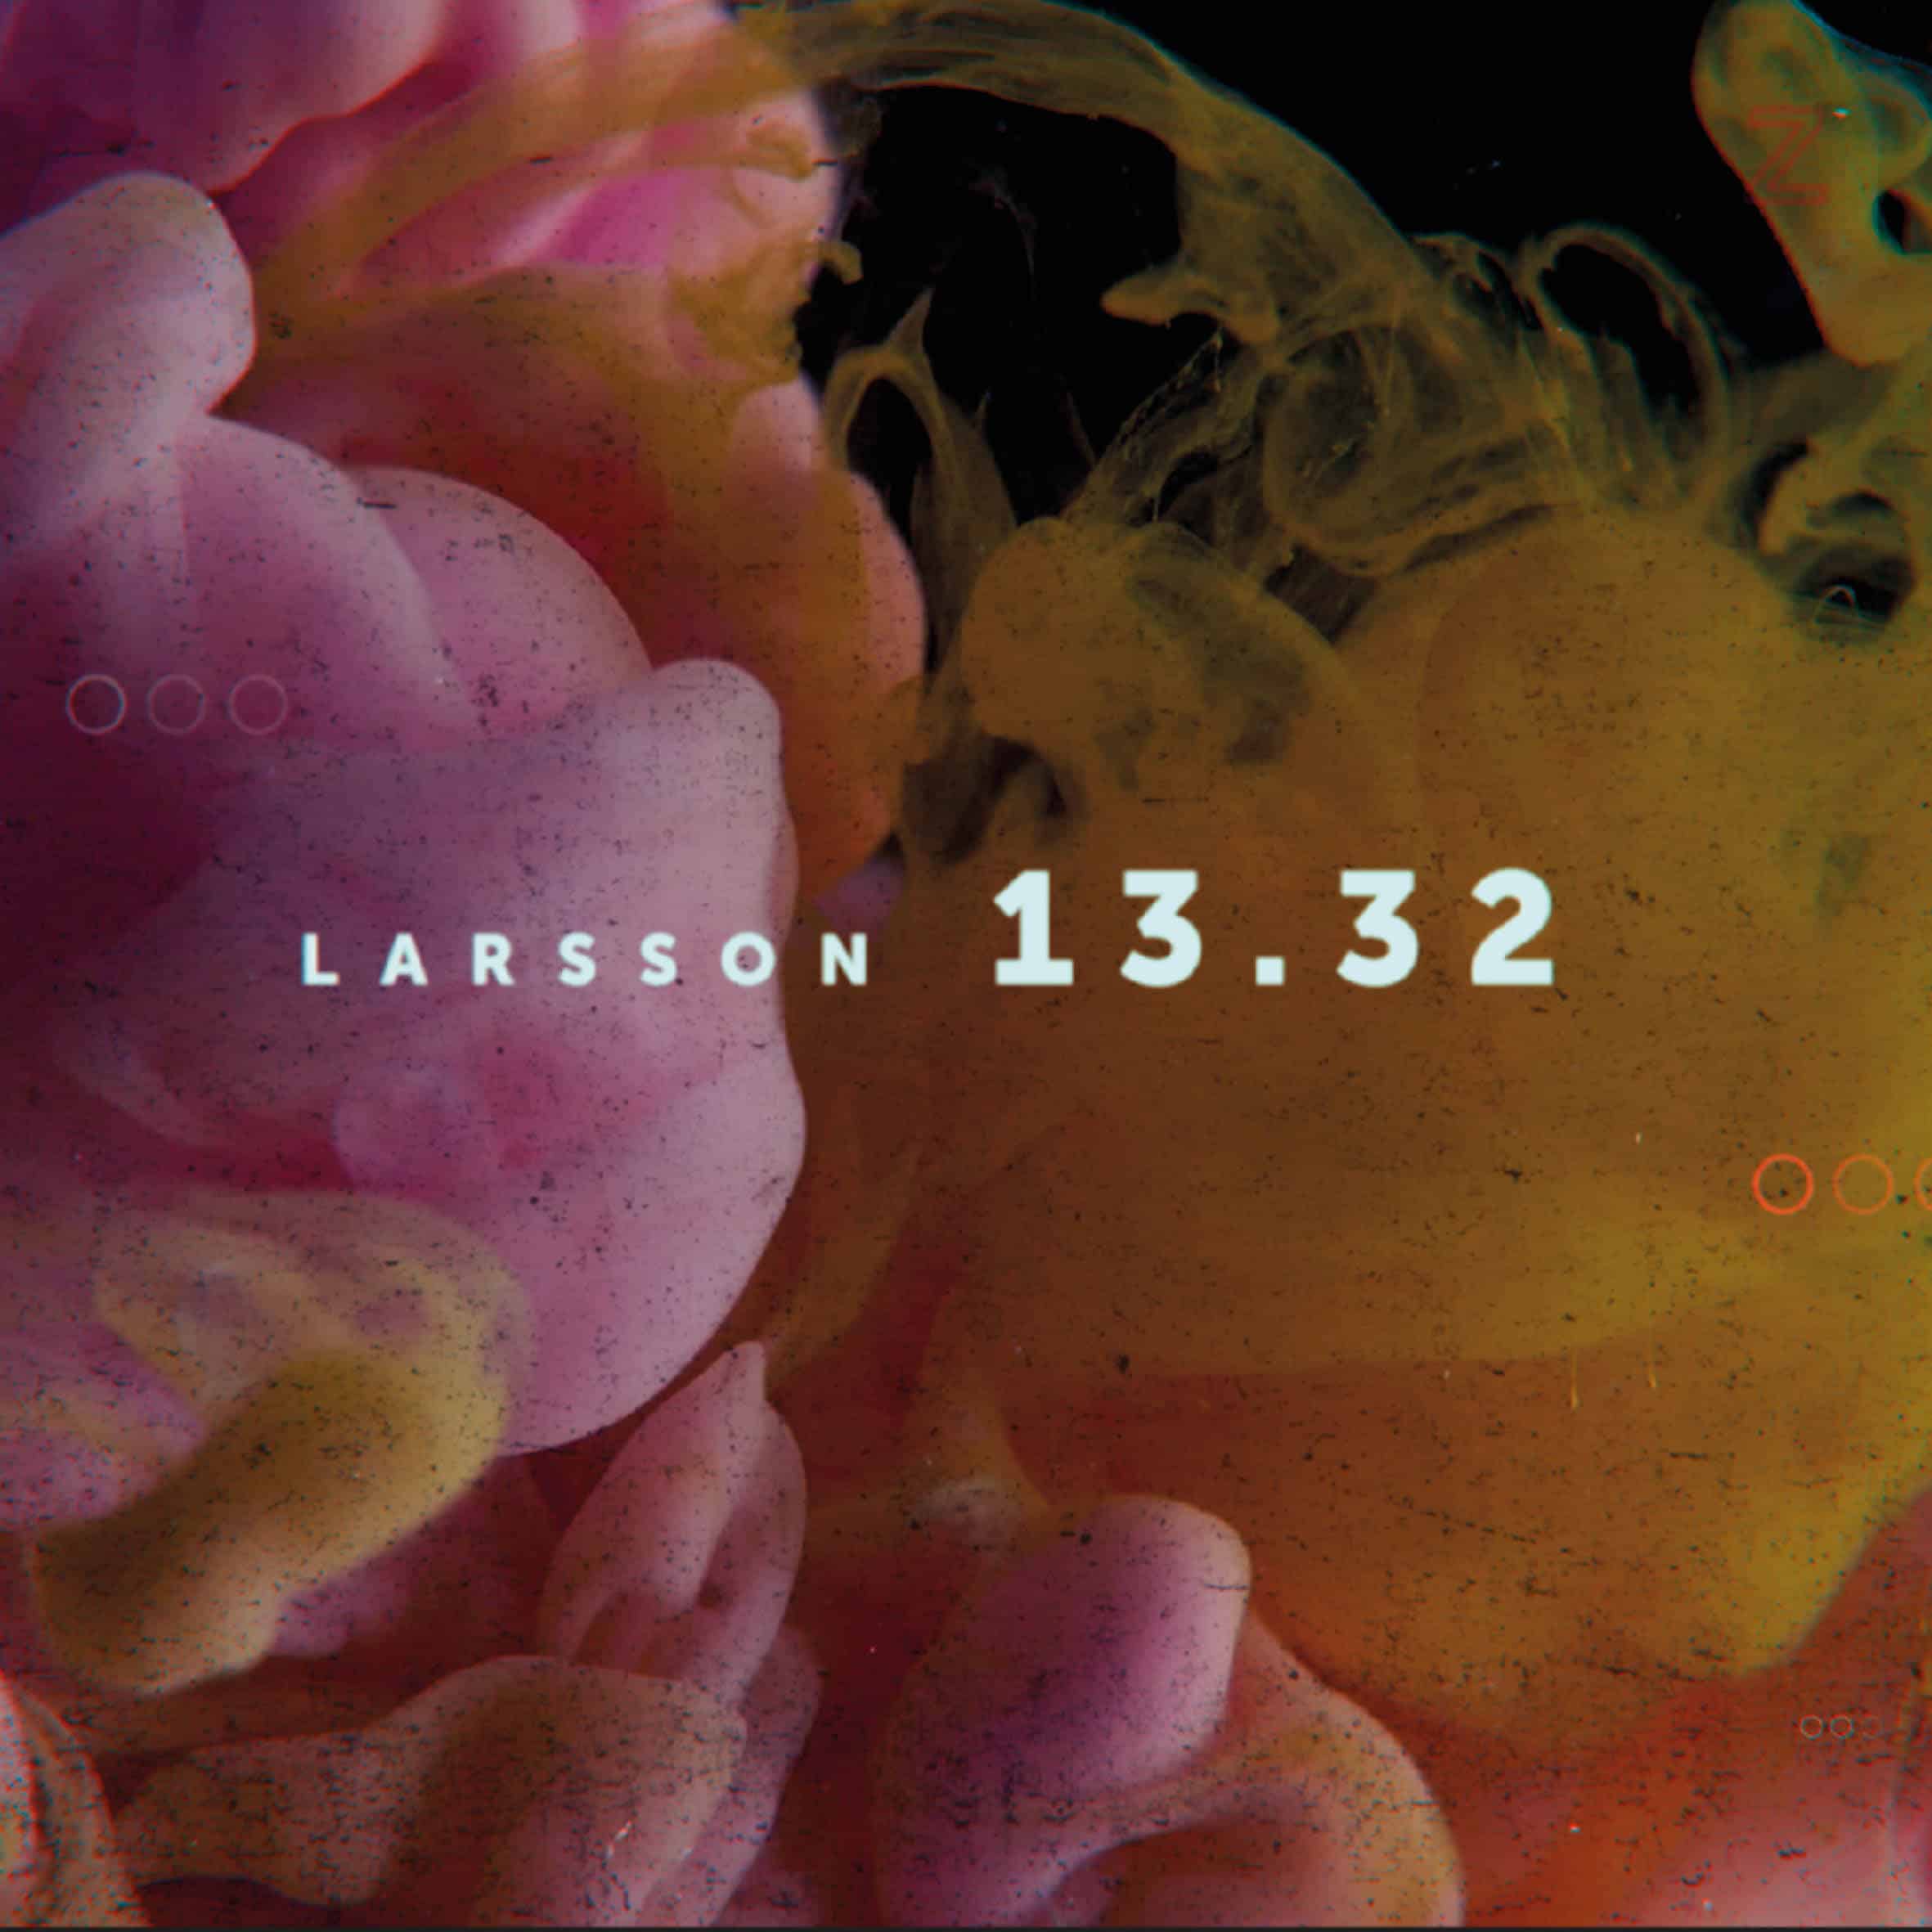 Larsson 13.32 – vart är vi på väg?